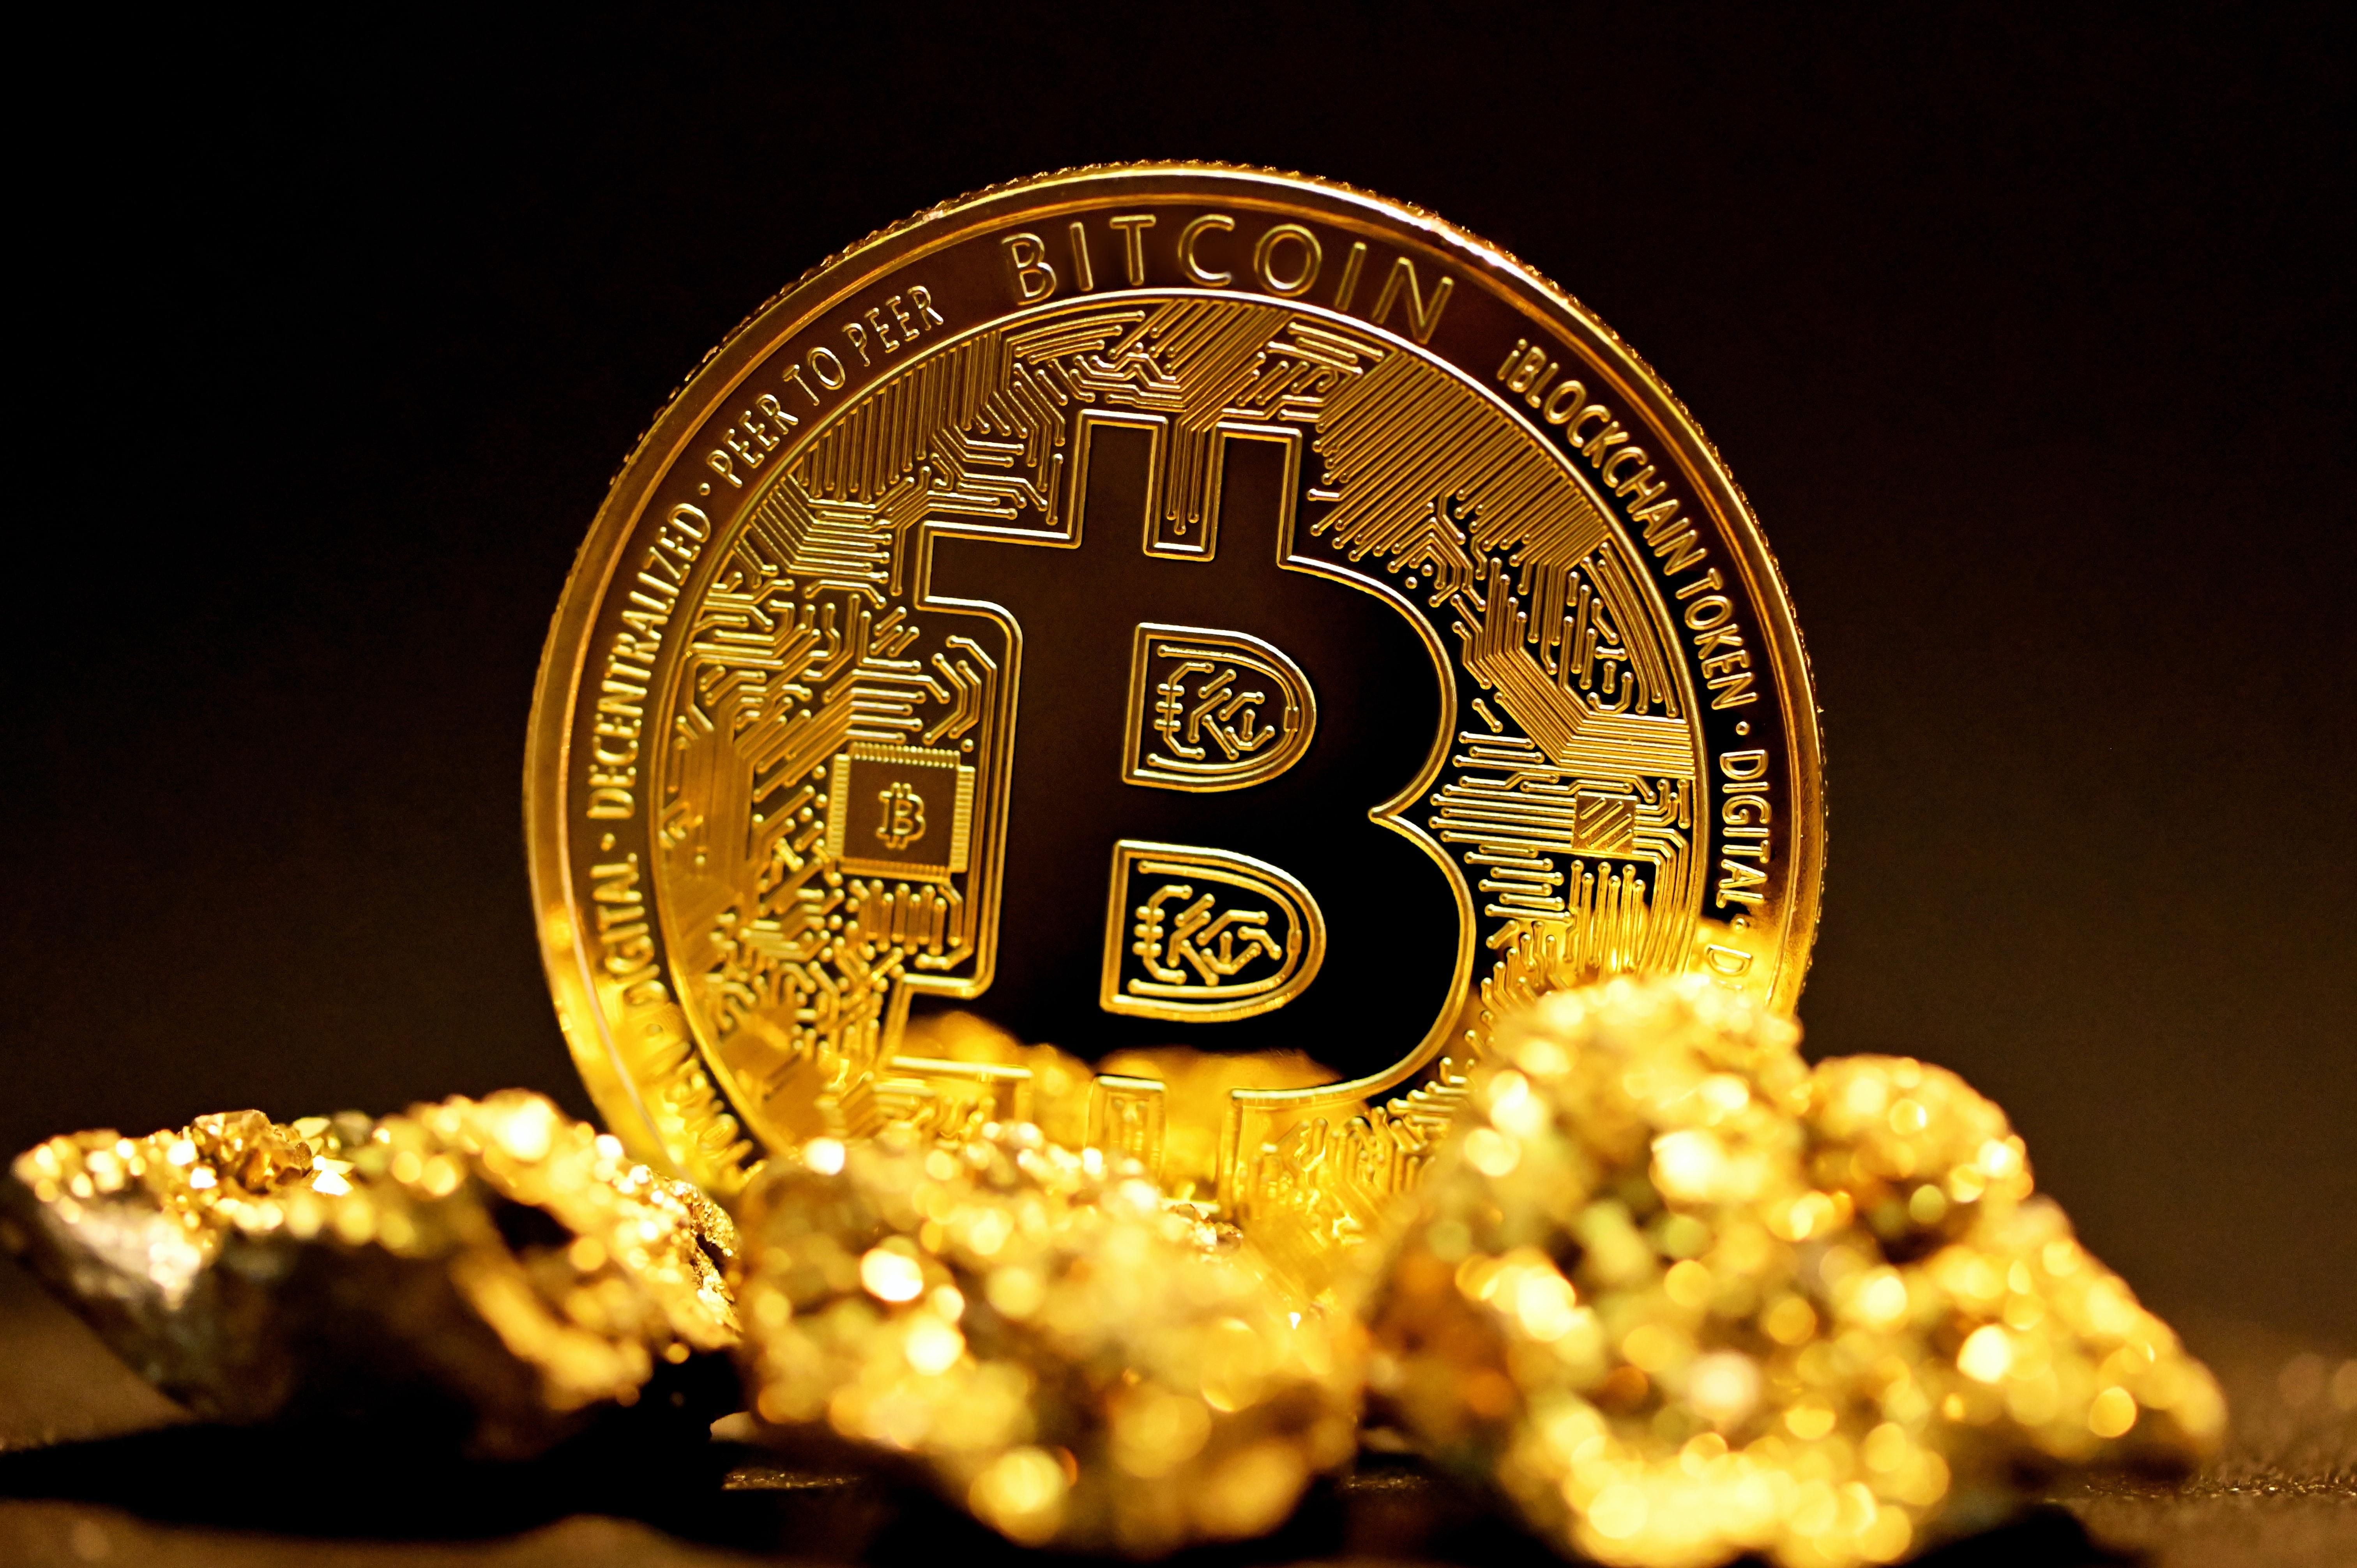 Bitcoin érme előtte aranyrögökkel